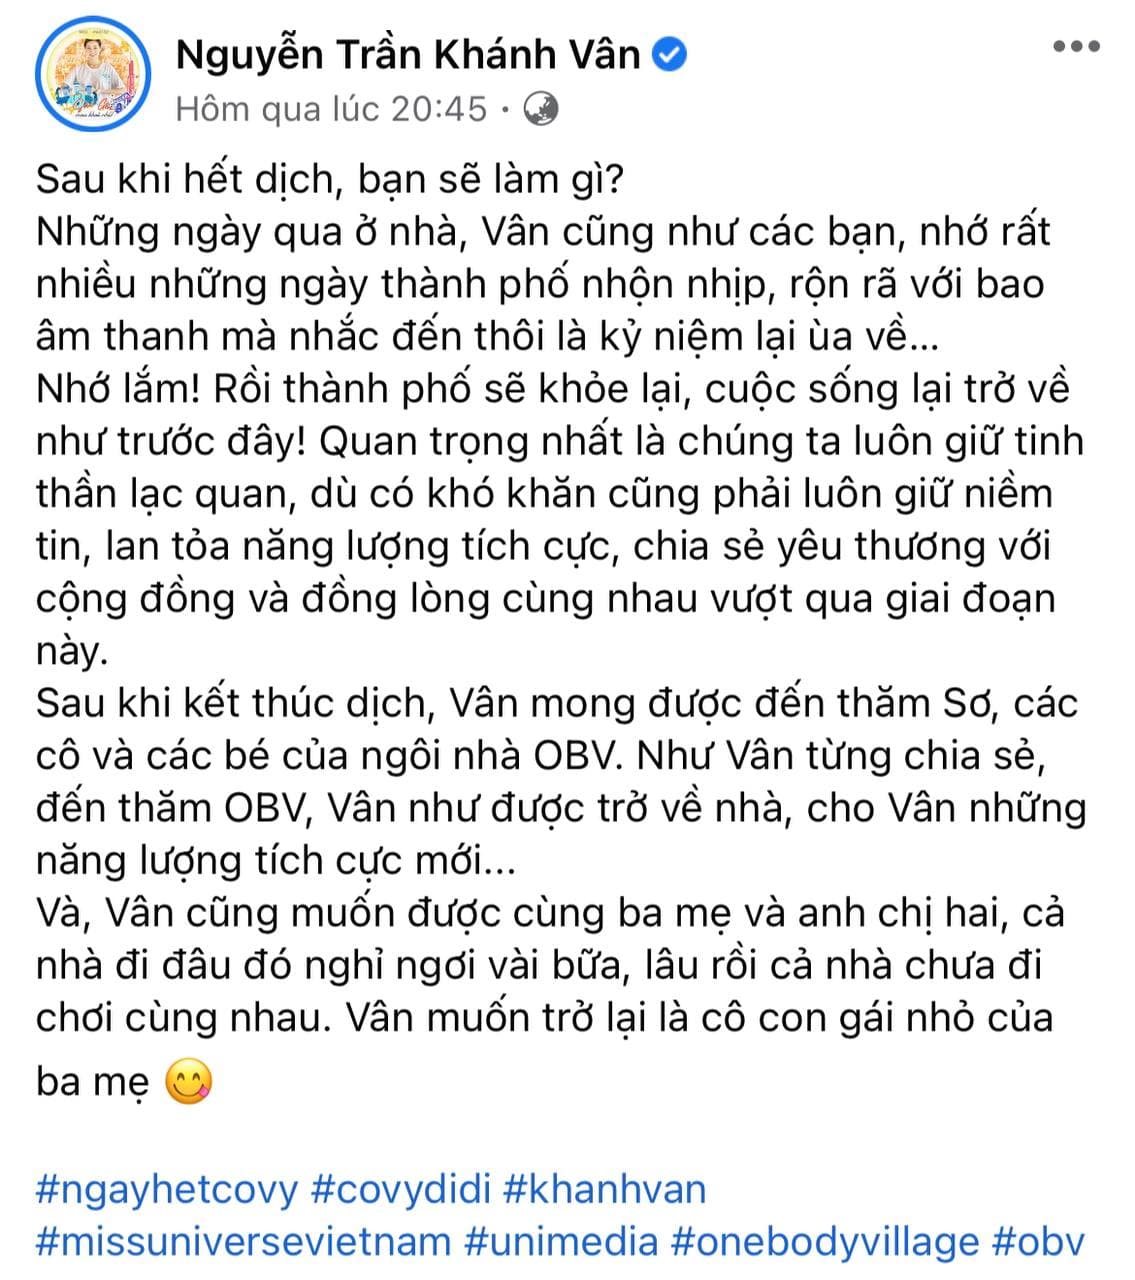 Dàn Hoa hậu, người mẫu sau dịch: Võ Hoàng Yến lấy chồng, Khánh Vân - Mâu Thủy - Hương Ly dự định gì? - Ảnh 5.